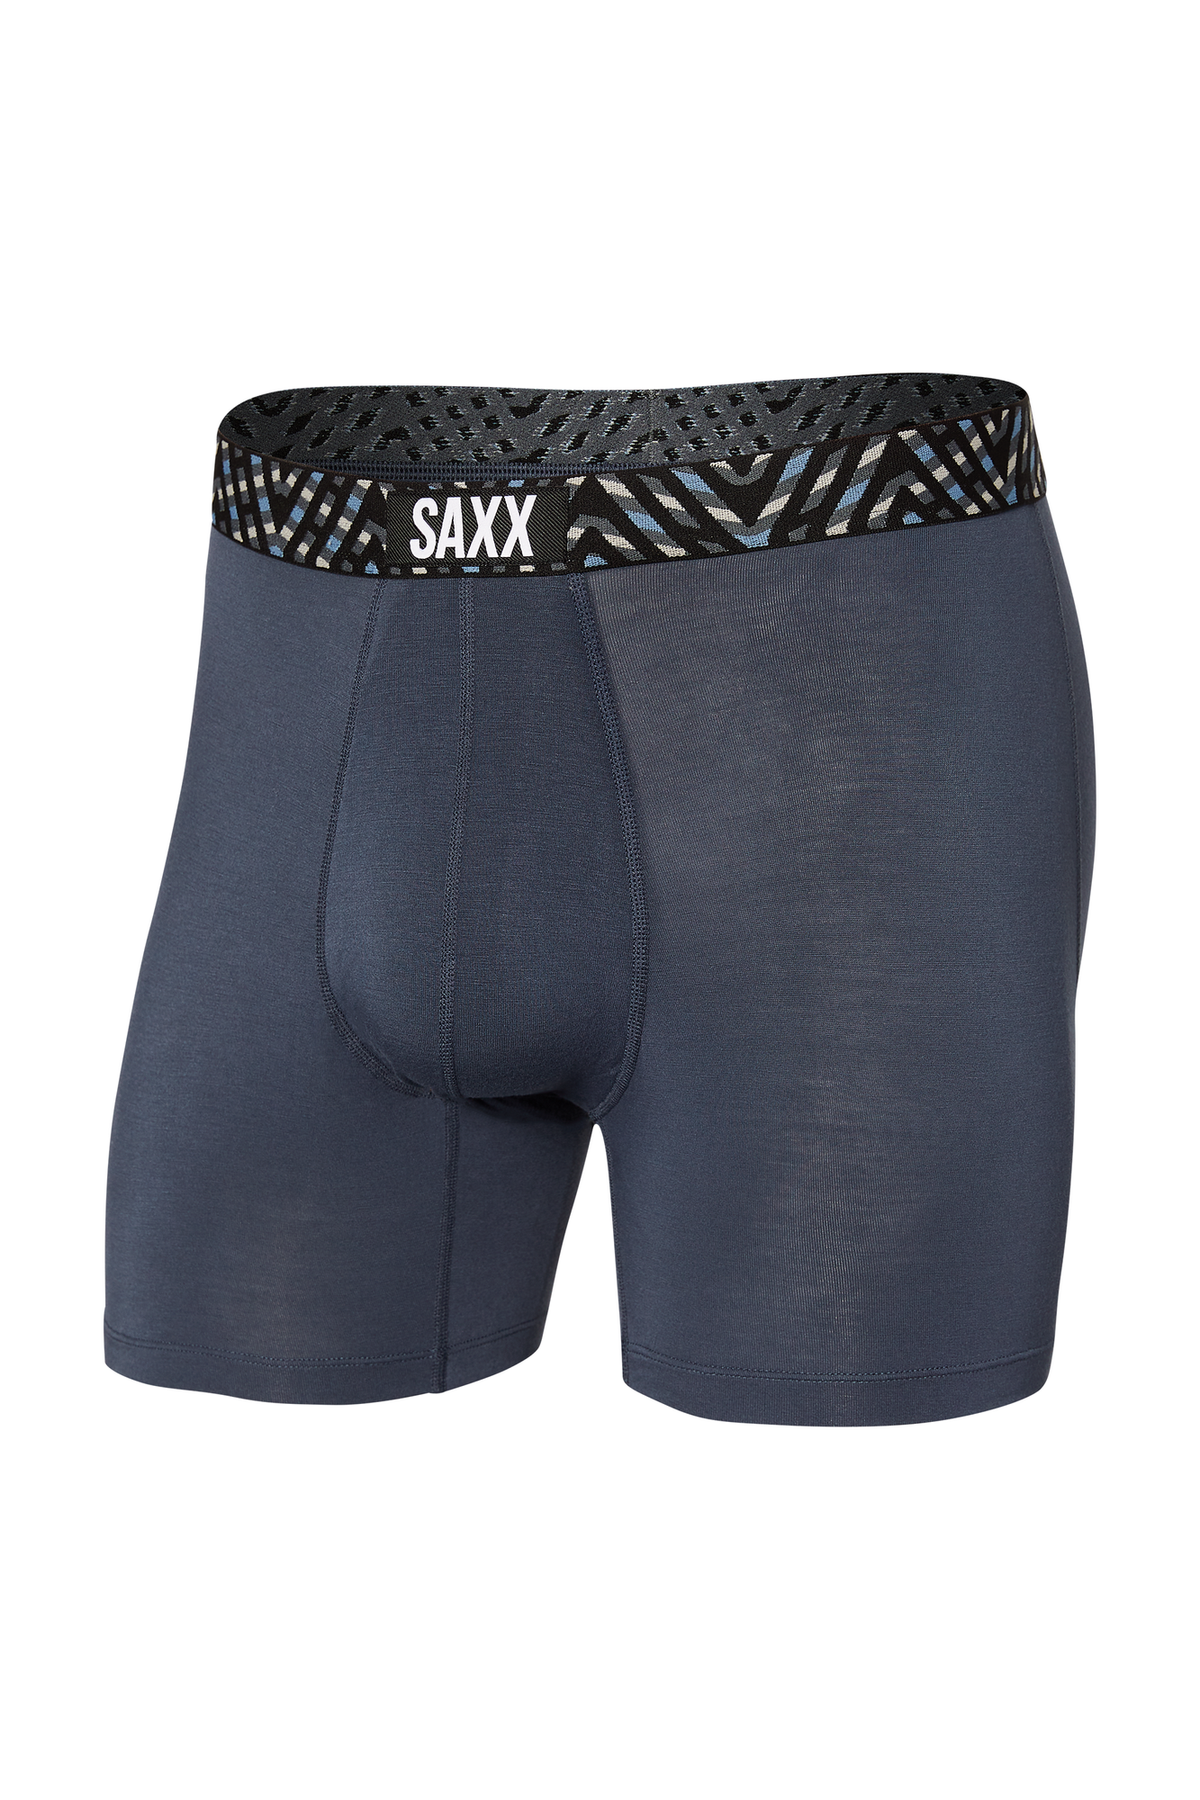 Saxx - Vibe Boxer Brief - Black Coast Stripe – The County Emporium